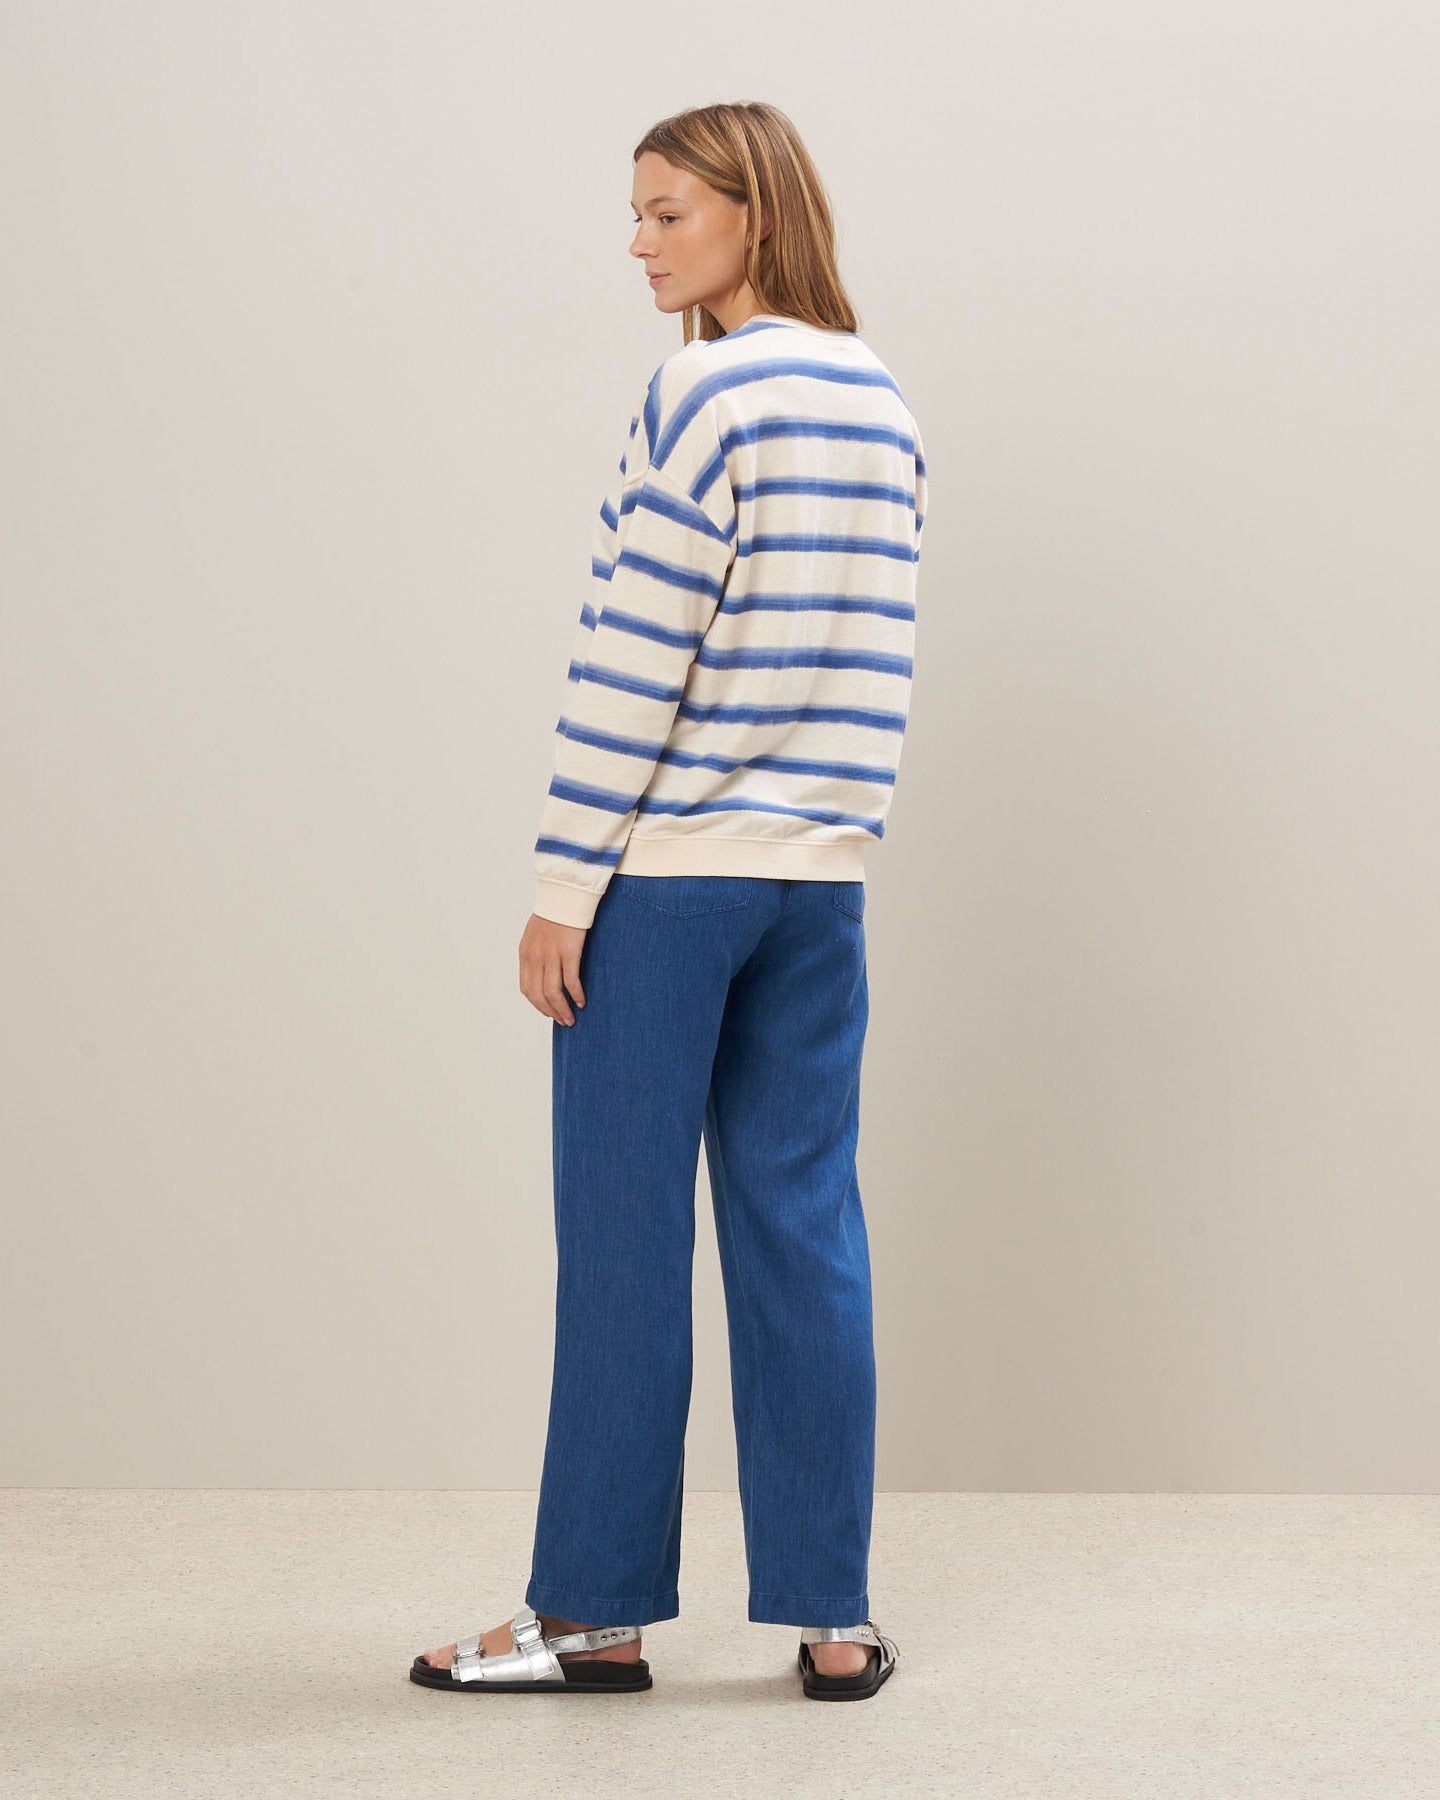 Sweatshirt Femme en éponge rayée Bleu Tayac BBUE514-01